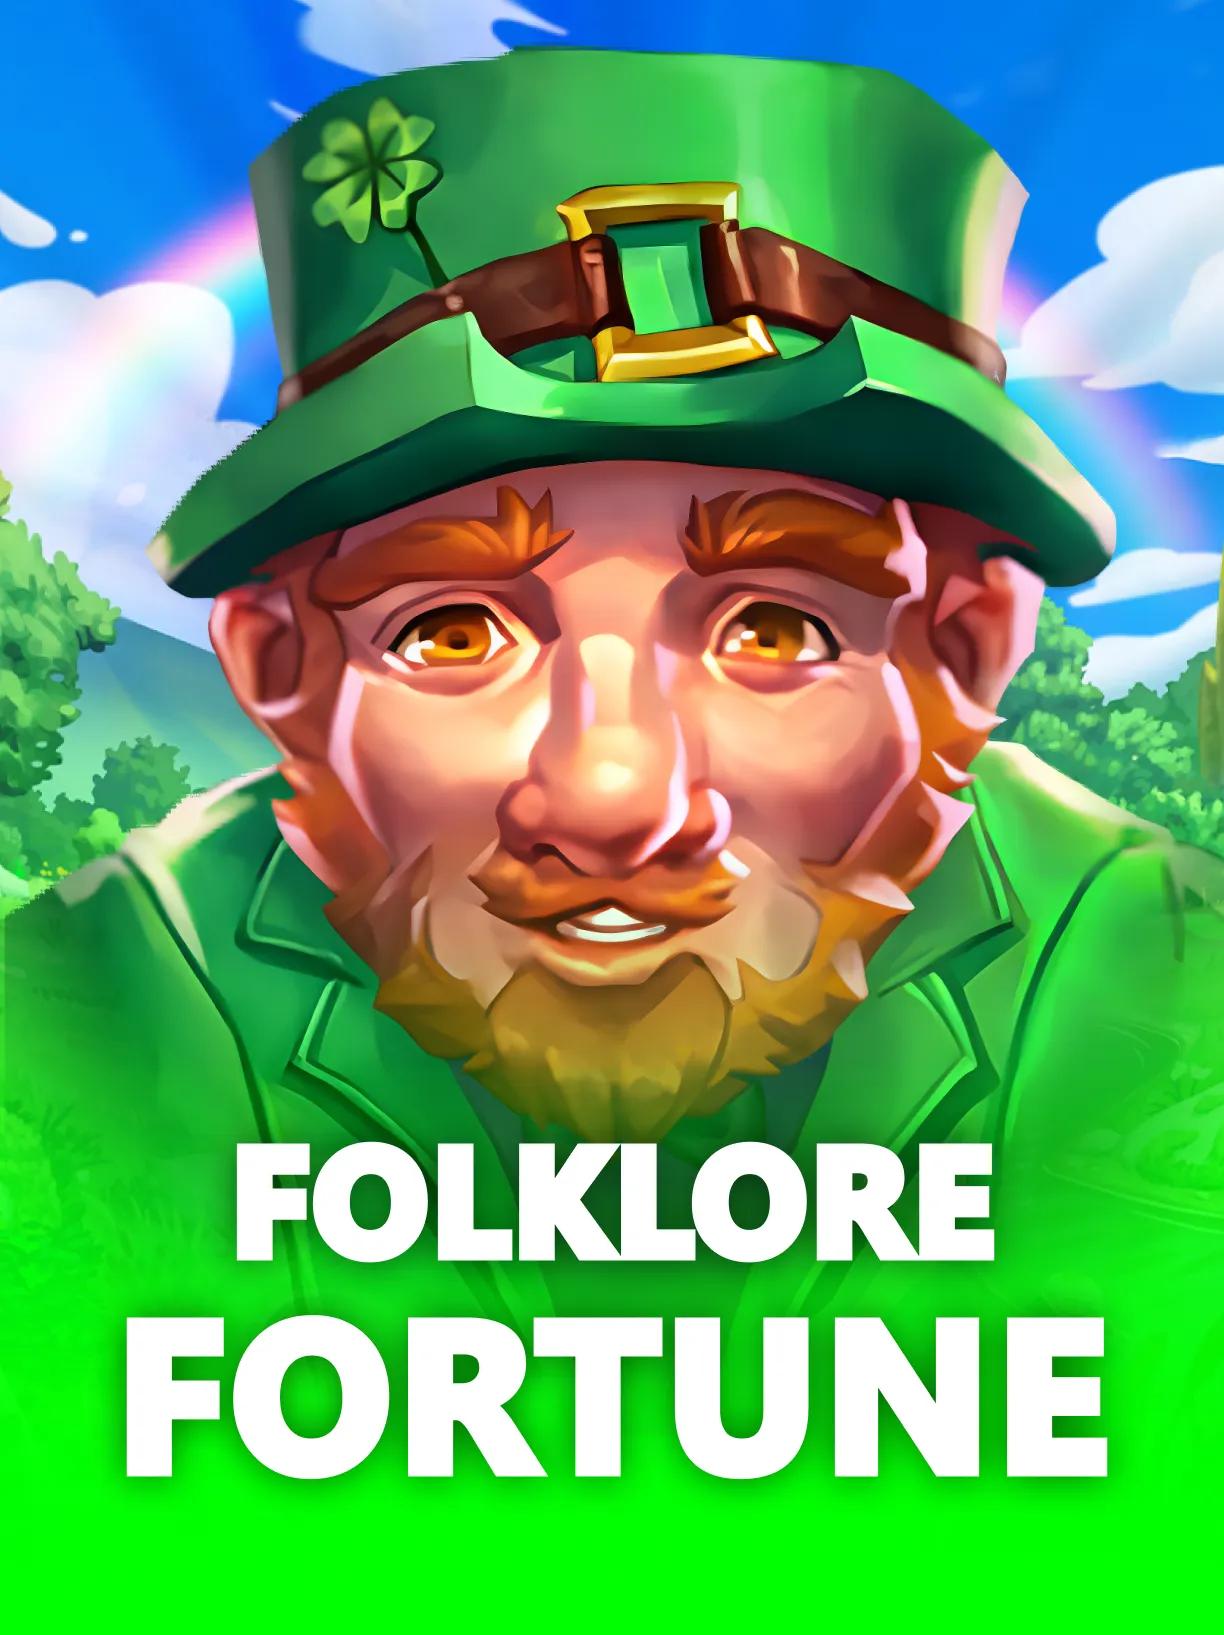 Folklore Fortune